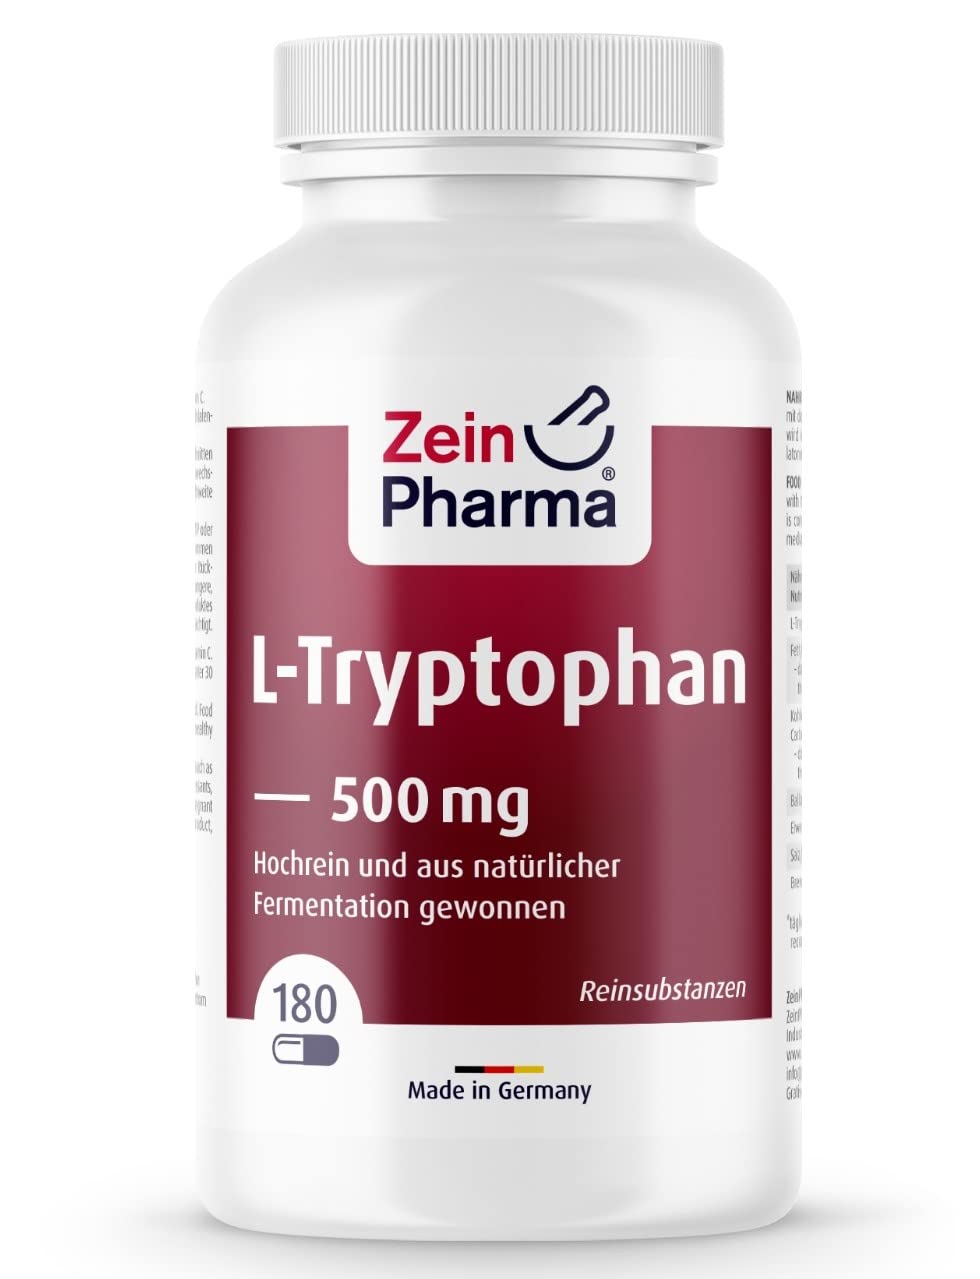 ZeinPharma L-Tryptophan 500mg - 180 vegane Kapseln - Aus pflanzlicher Fermentation - natürlich, laborgeprüft, vegan, hochdosiert & in Deutschland produziert